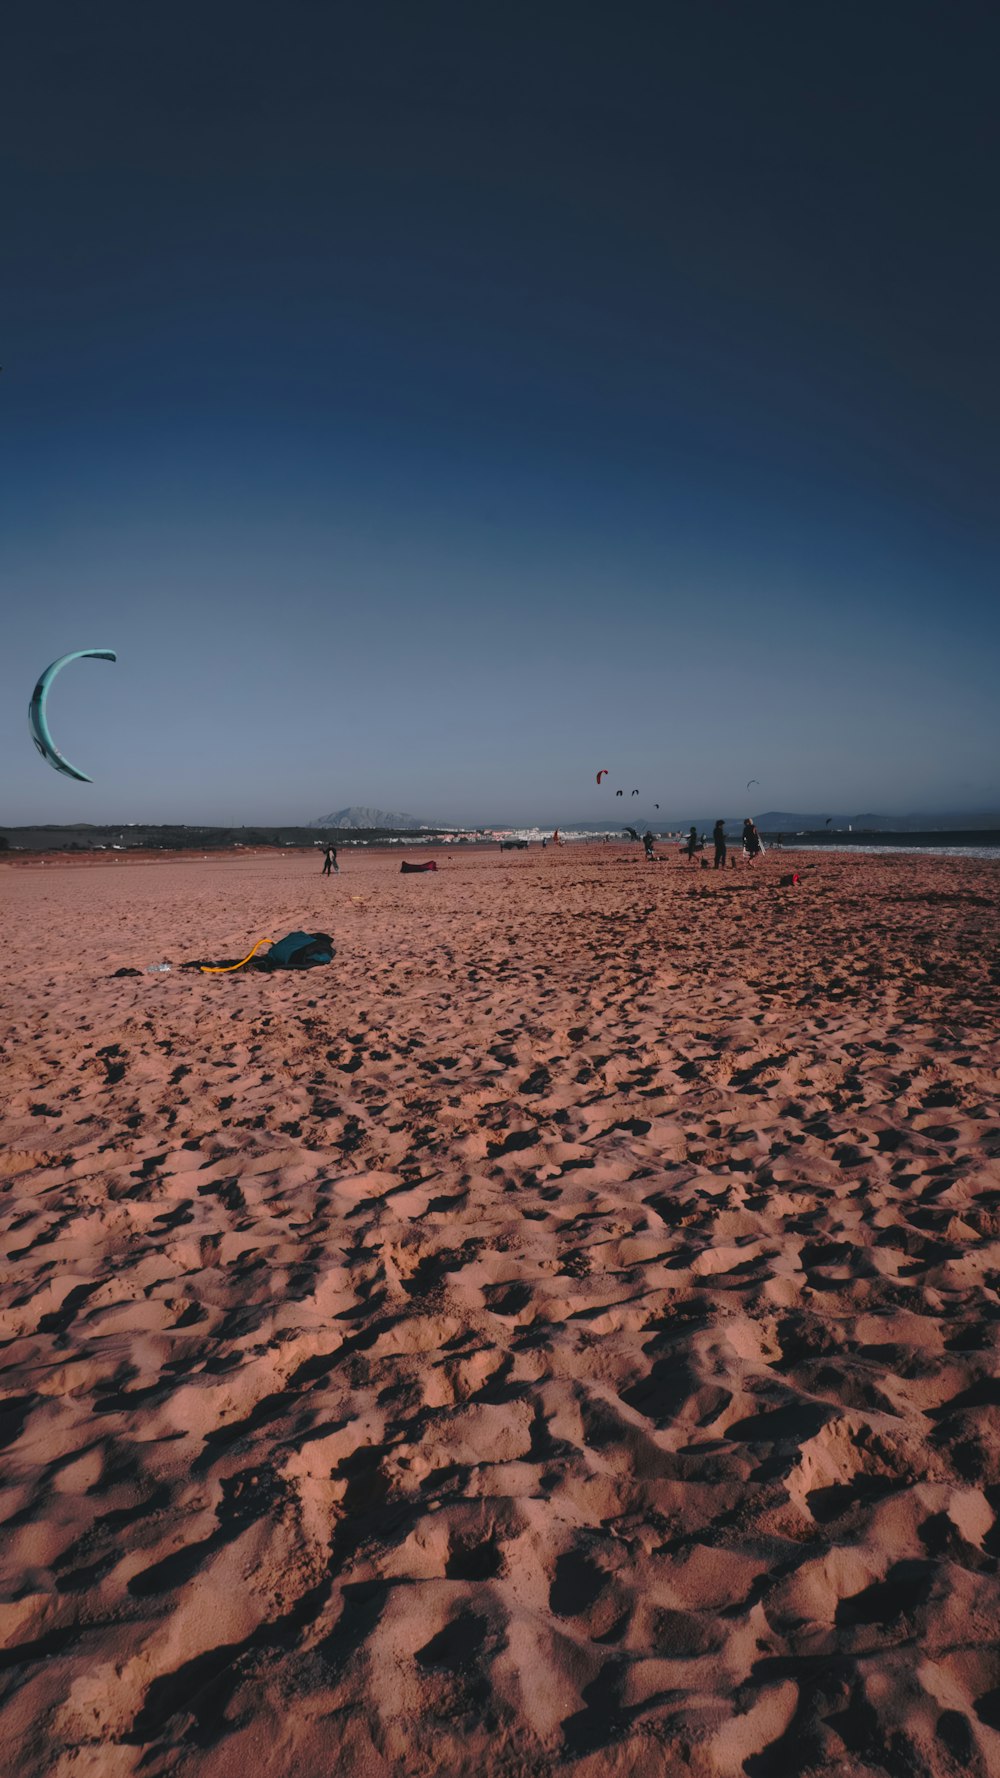 a kite flying over a sandy beach under a blue sky